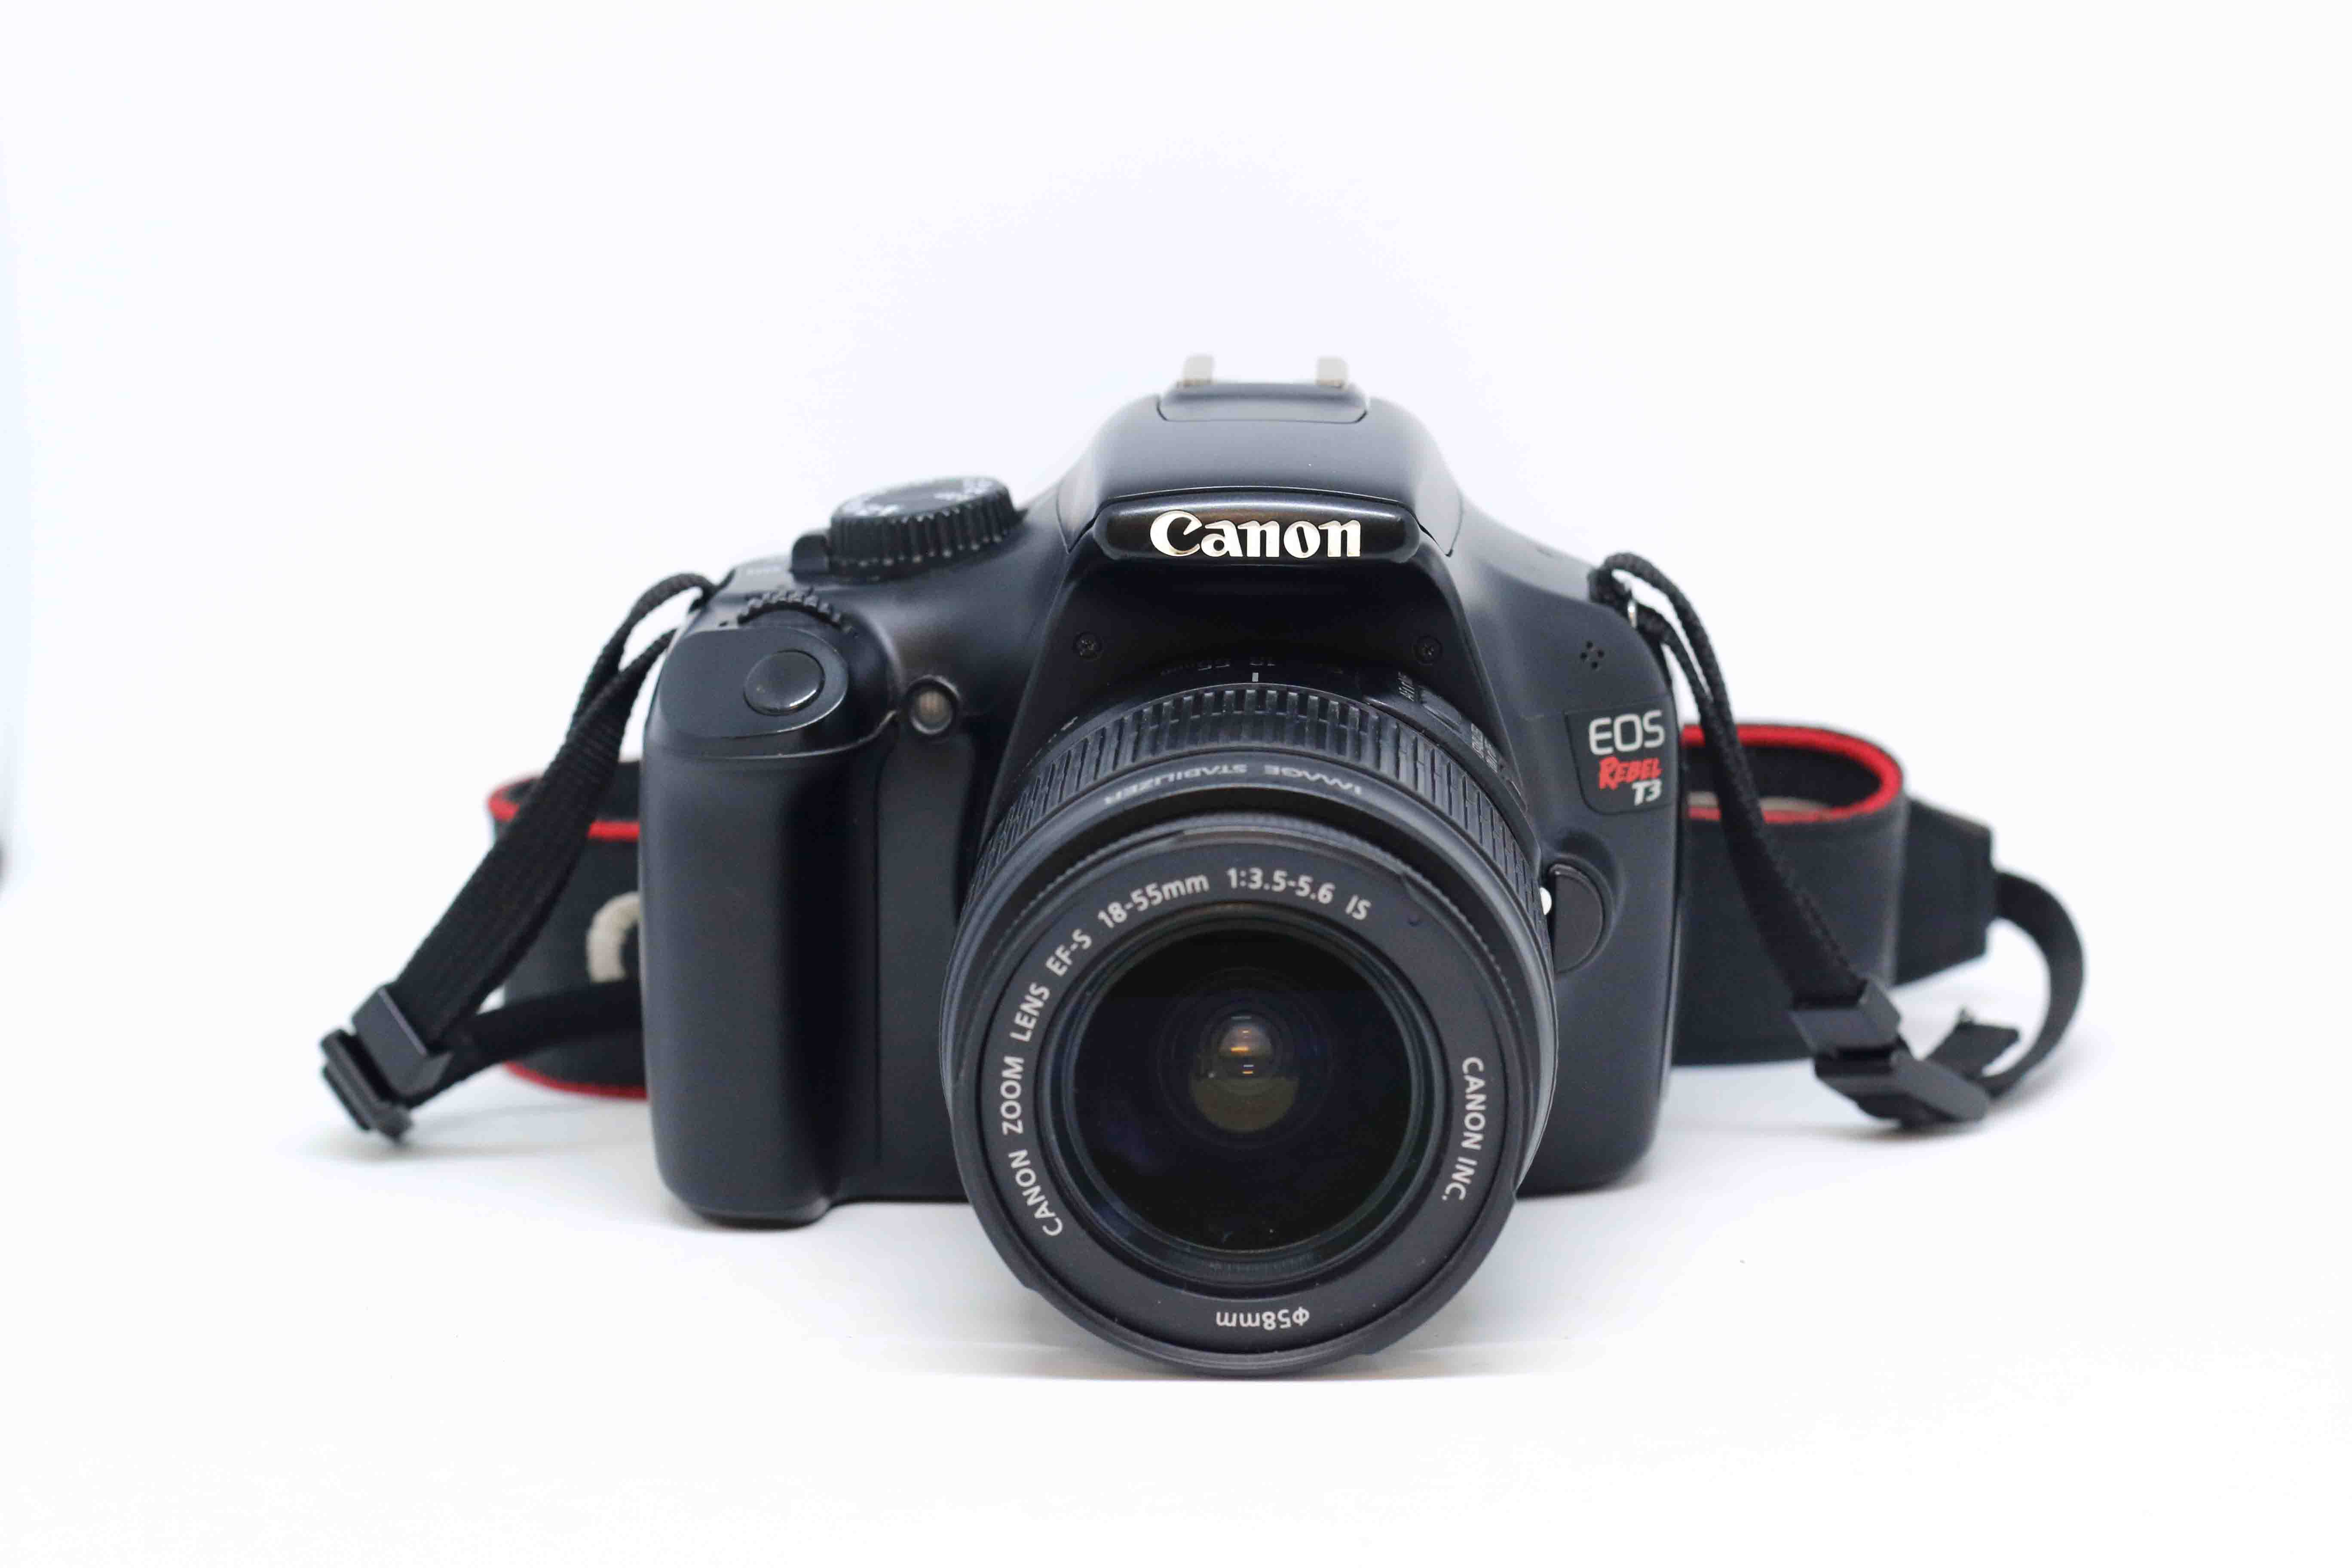 Máy ảnh Canon 1100D ( Rebel T3 ) + ống kính 18-55mm F/3.5-5.6